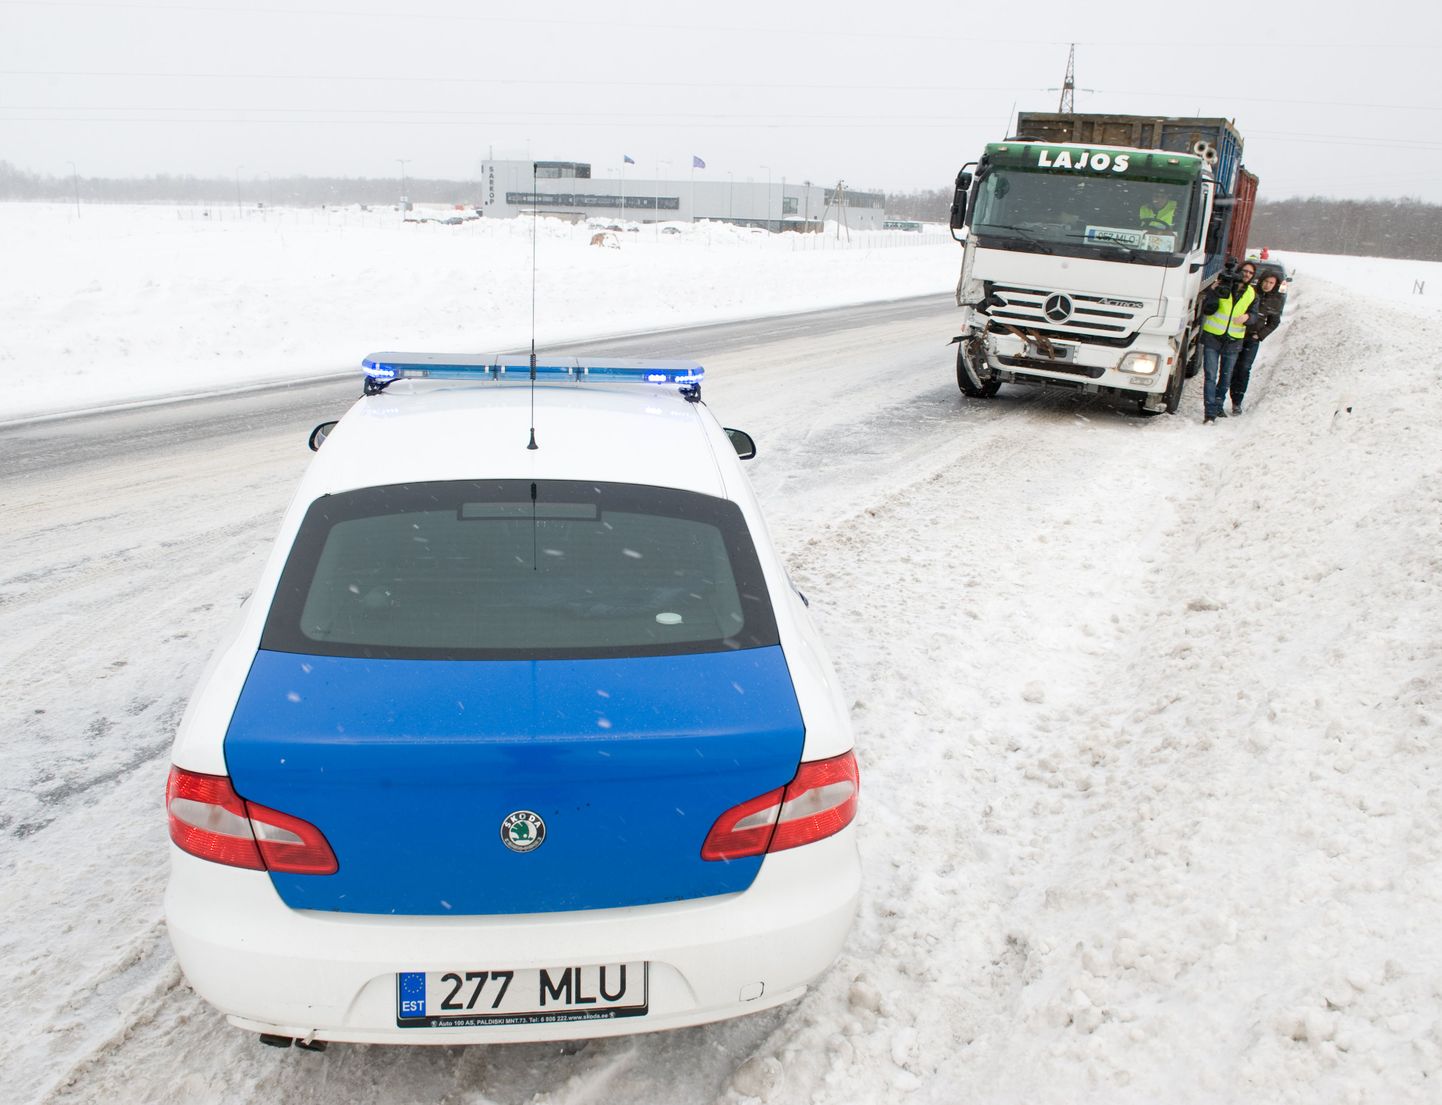 Liiklusõnnetus Tallinna ringteel Jüri lähedal.